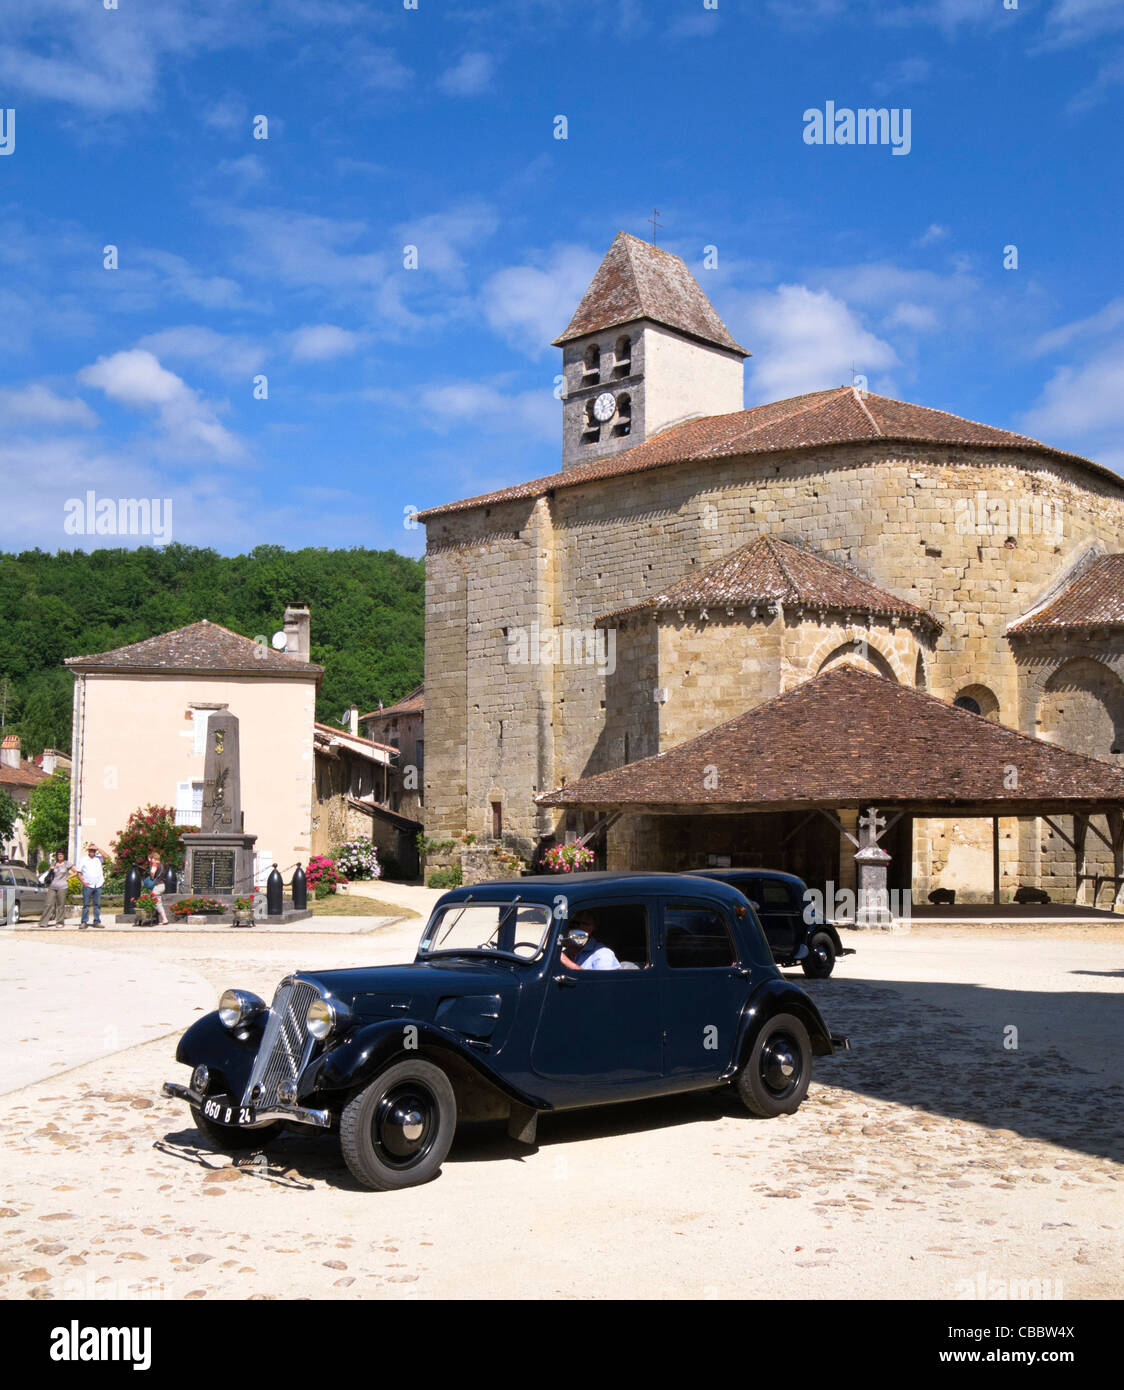 Classic Bentley vintage car in St Jean de Cole, Dordogne, France Stock Photo